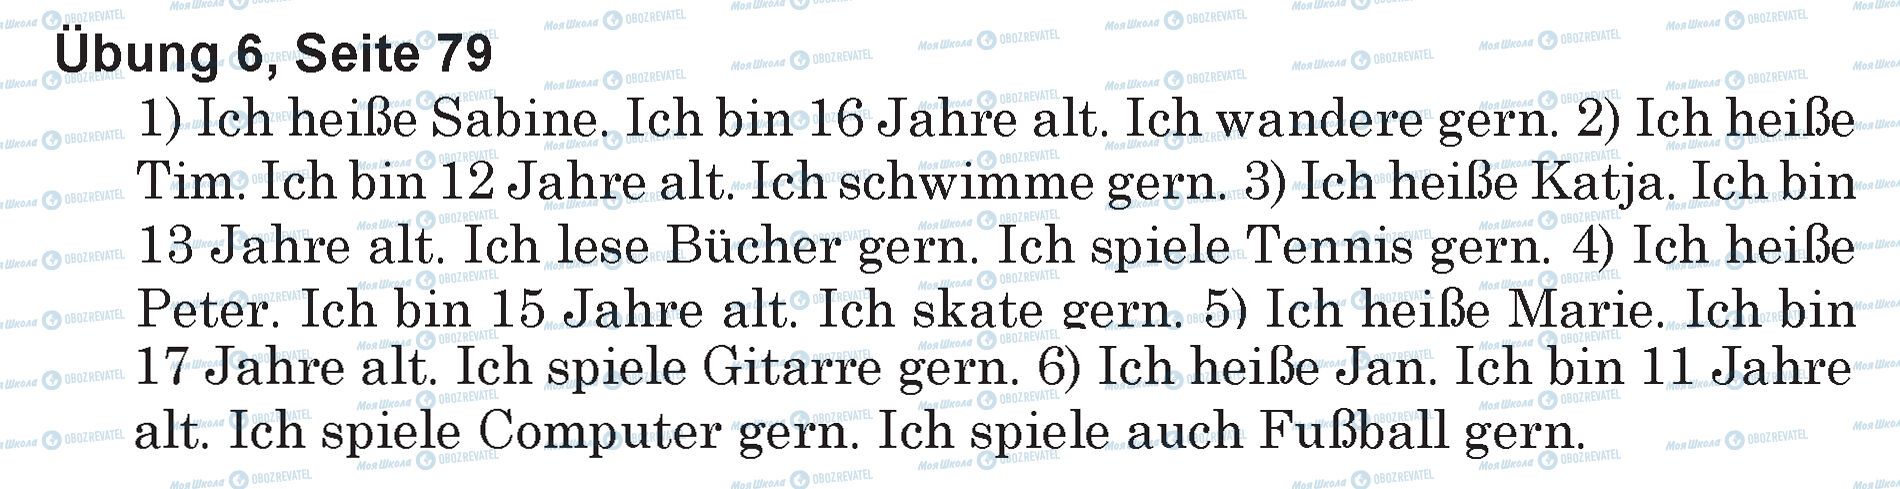 ГДЗ Німецька мова 5 клас сторінка Ubung 6, Seite 79